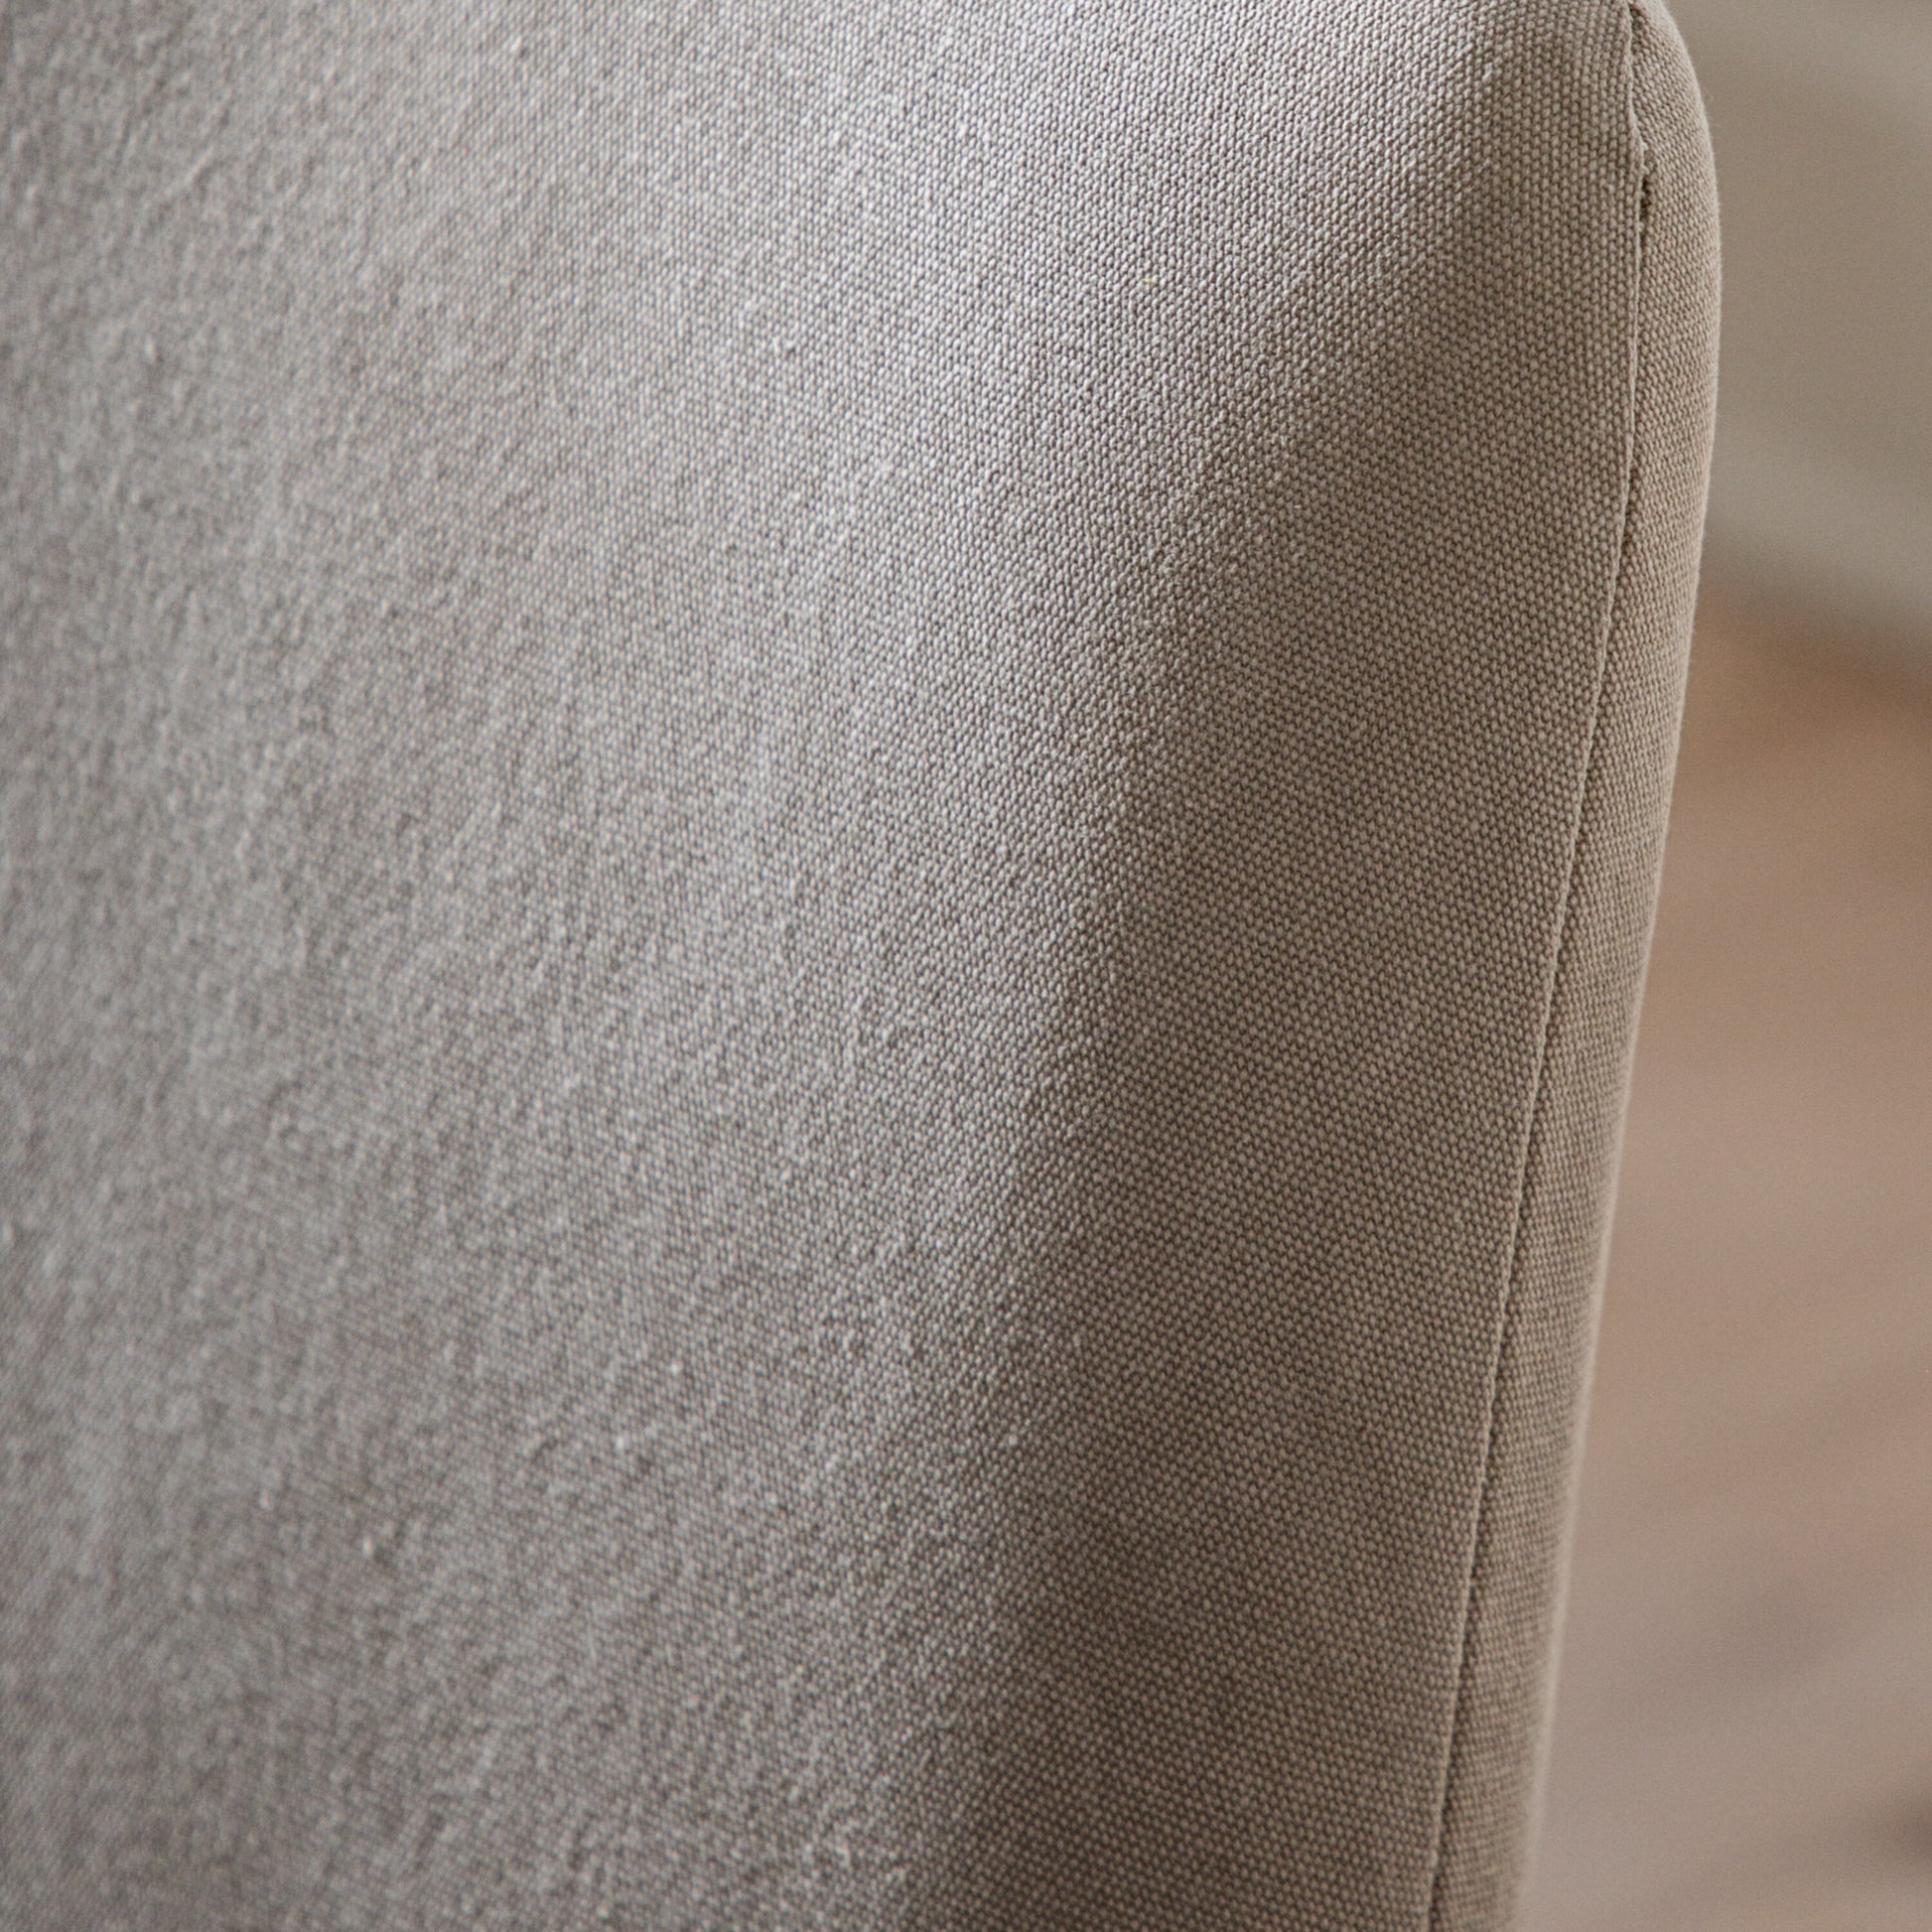 Mindi Walnut Chair | Cement Linen (2 Pack)